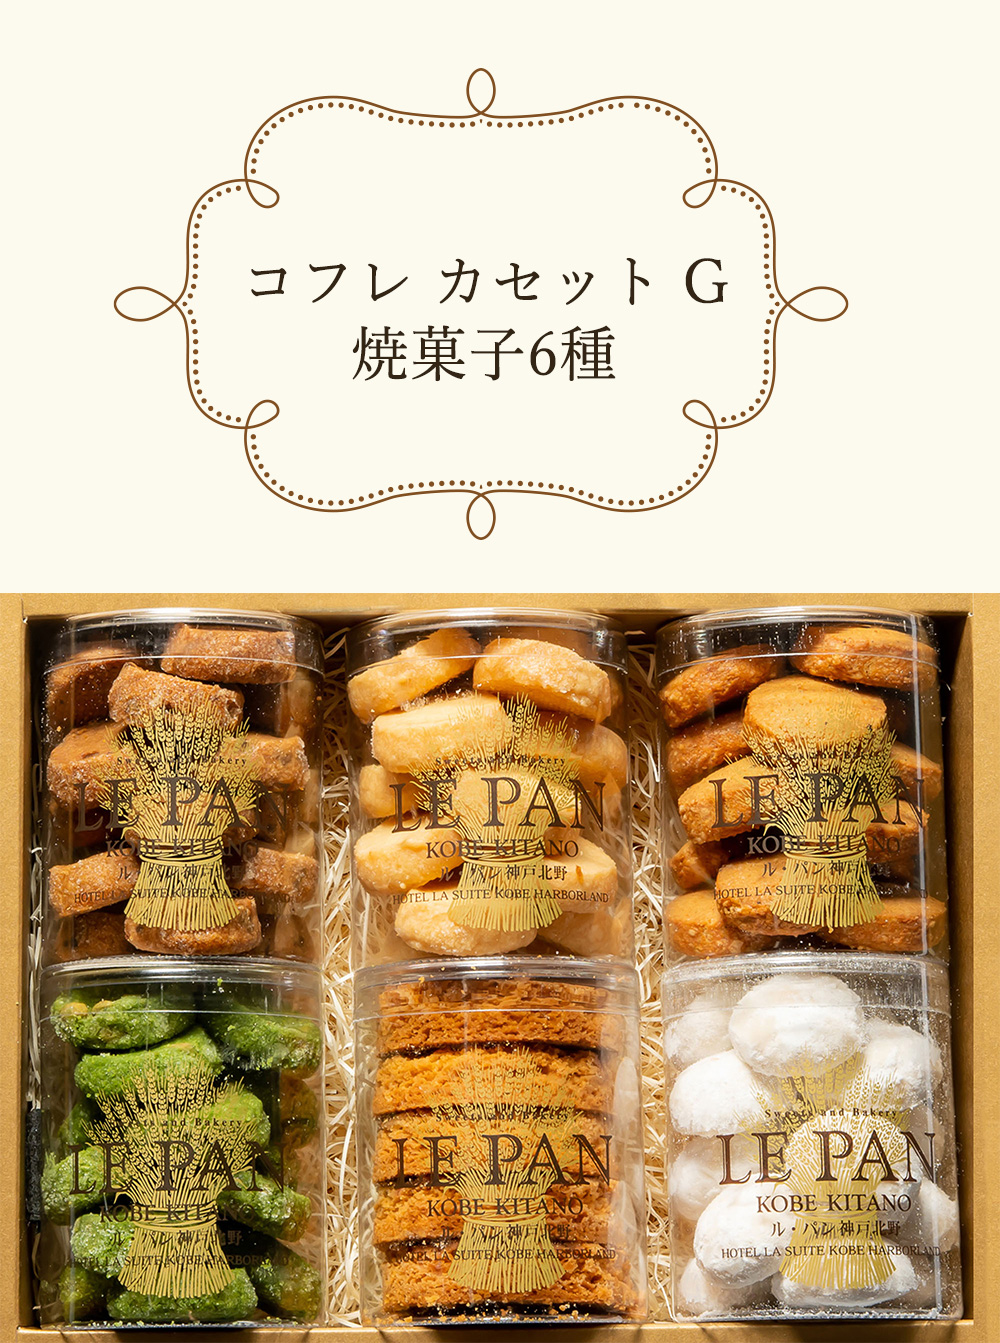 ル・パン神戸北野 コフレ カセット G 焼菓子6種